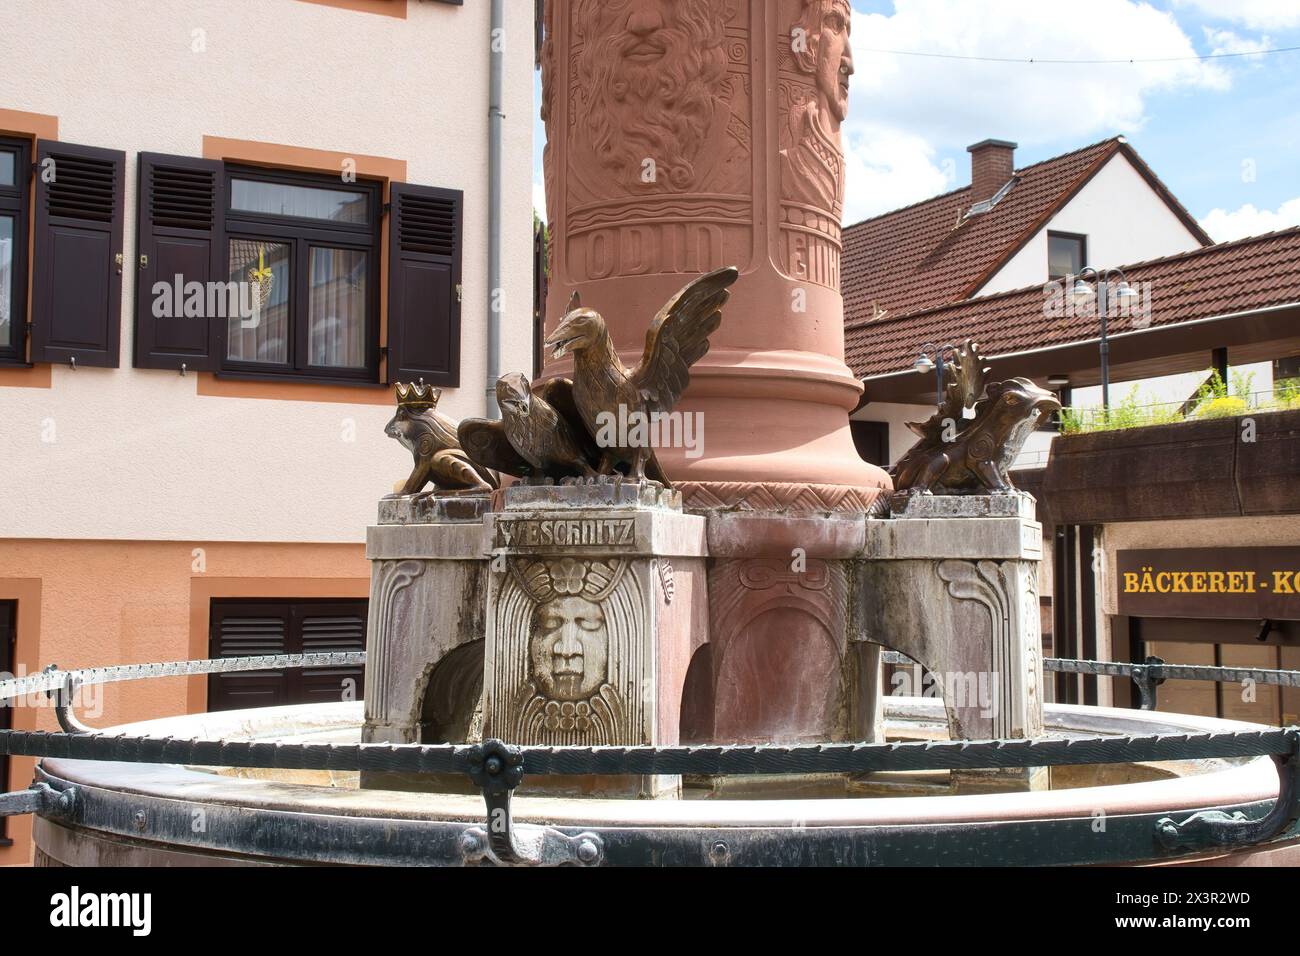 Weinheim, Allemagne - 19 mai 2021:base d'une statue dans une rue de Weinheim, Allemagne avec une boulangerie en arrière-plan. Banque D'Images